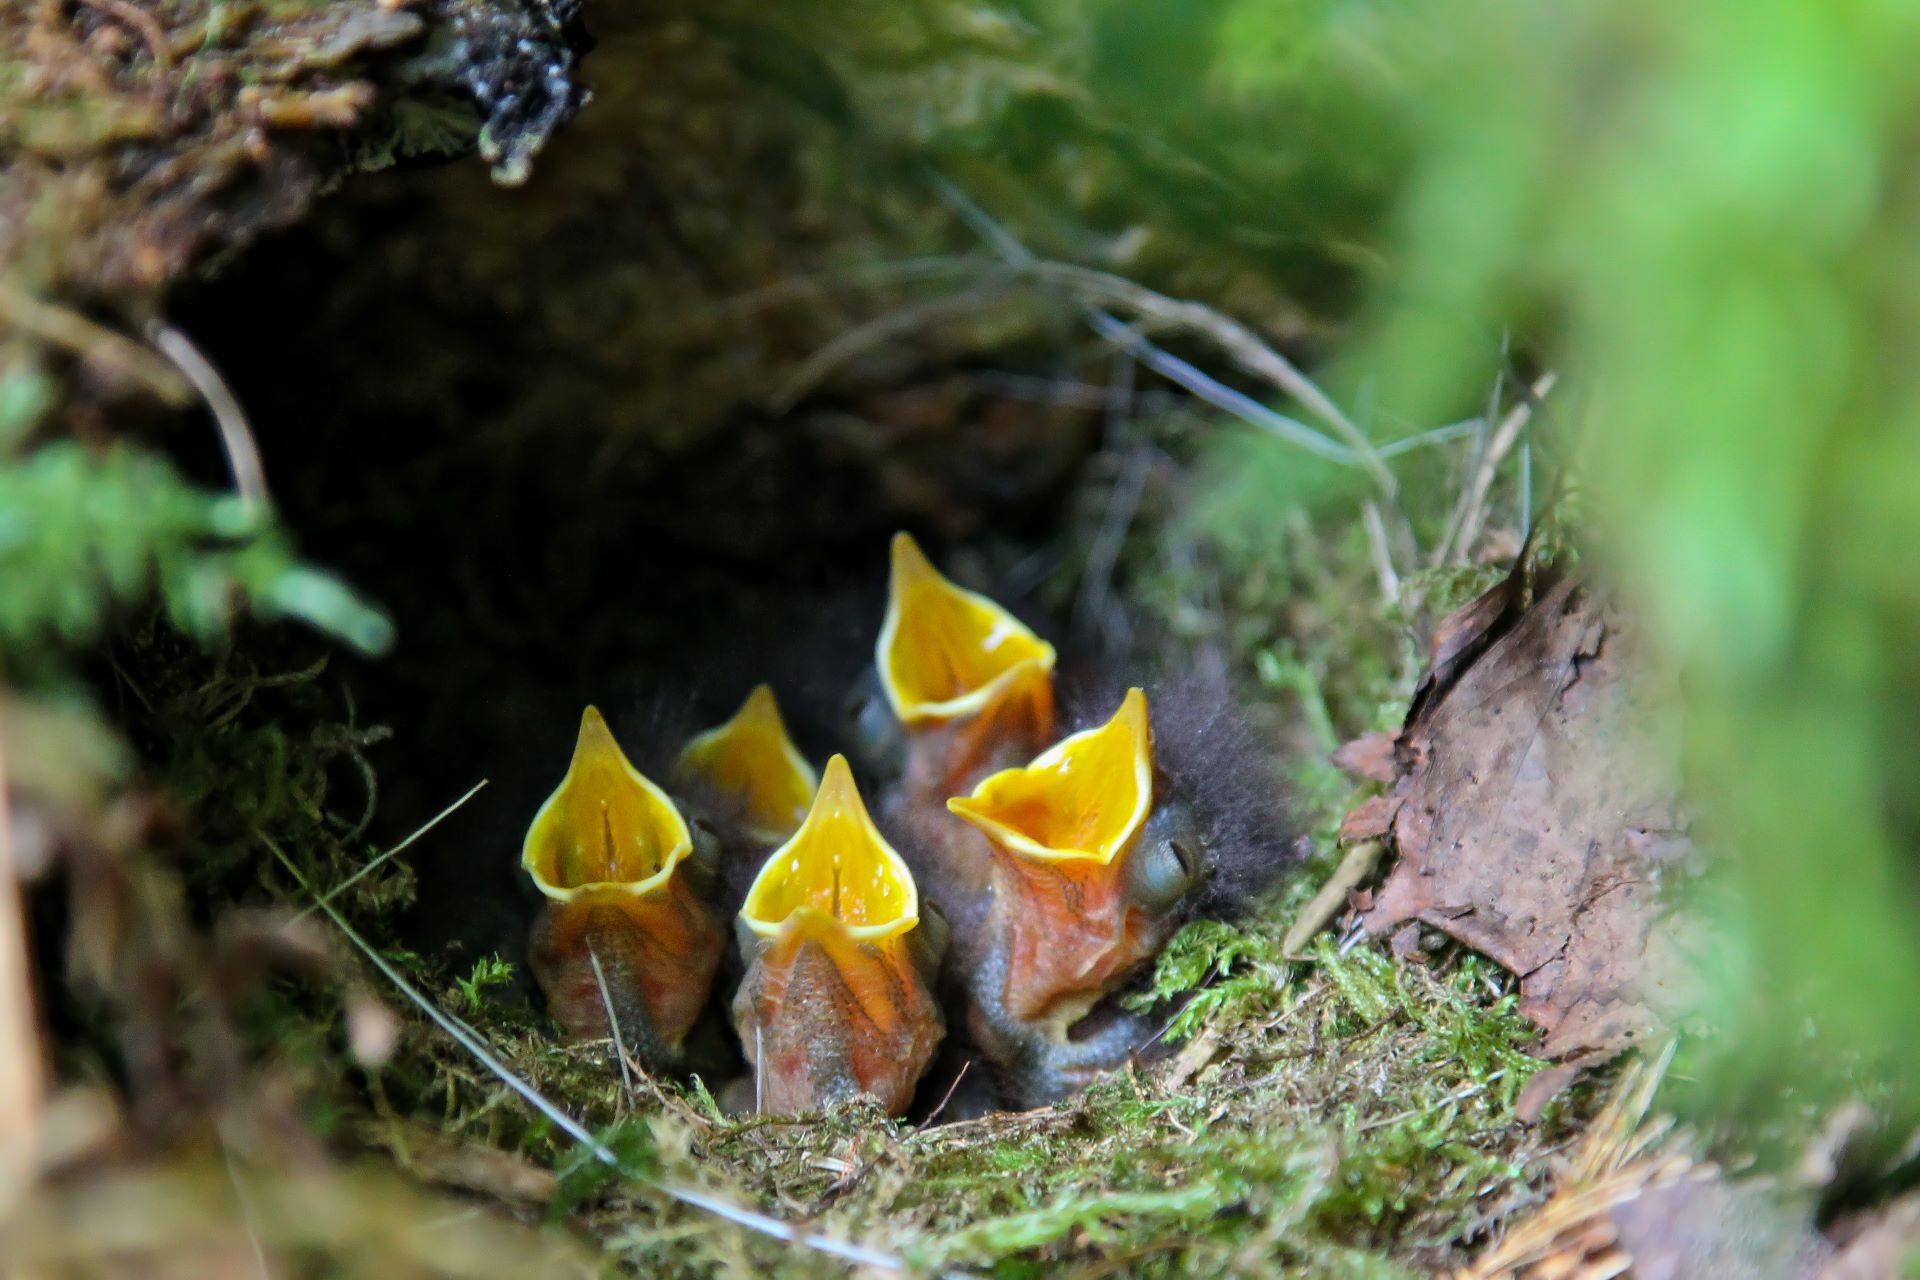 Fünf kleine Rotkehlchen sitzen in einem Nest aus Moos, Blättern und Ästen und strecken gierig ihre gelben, weit aufgespannten Schnäbel in die Luft.